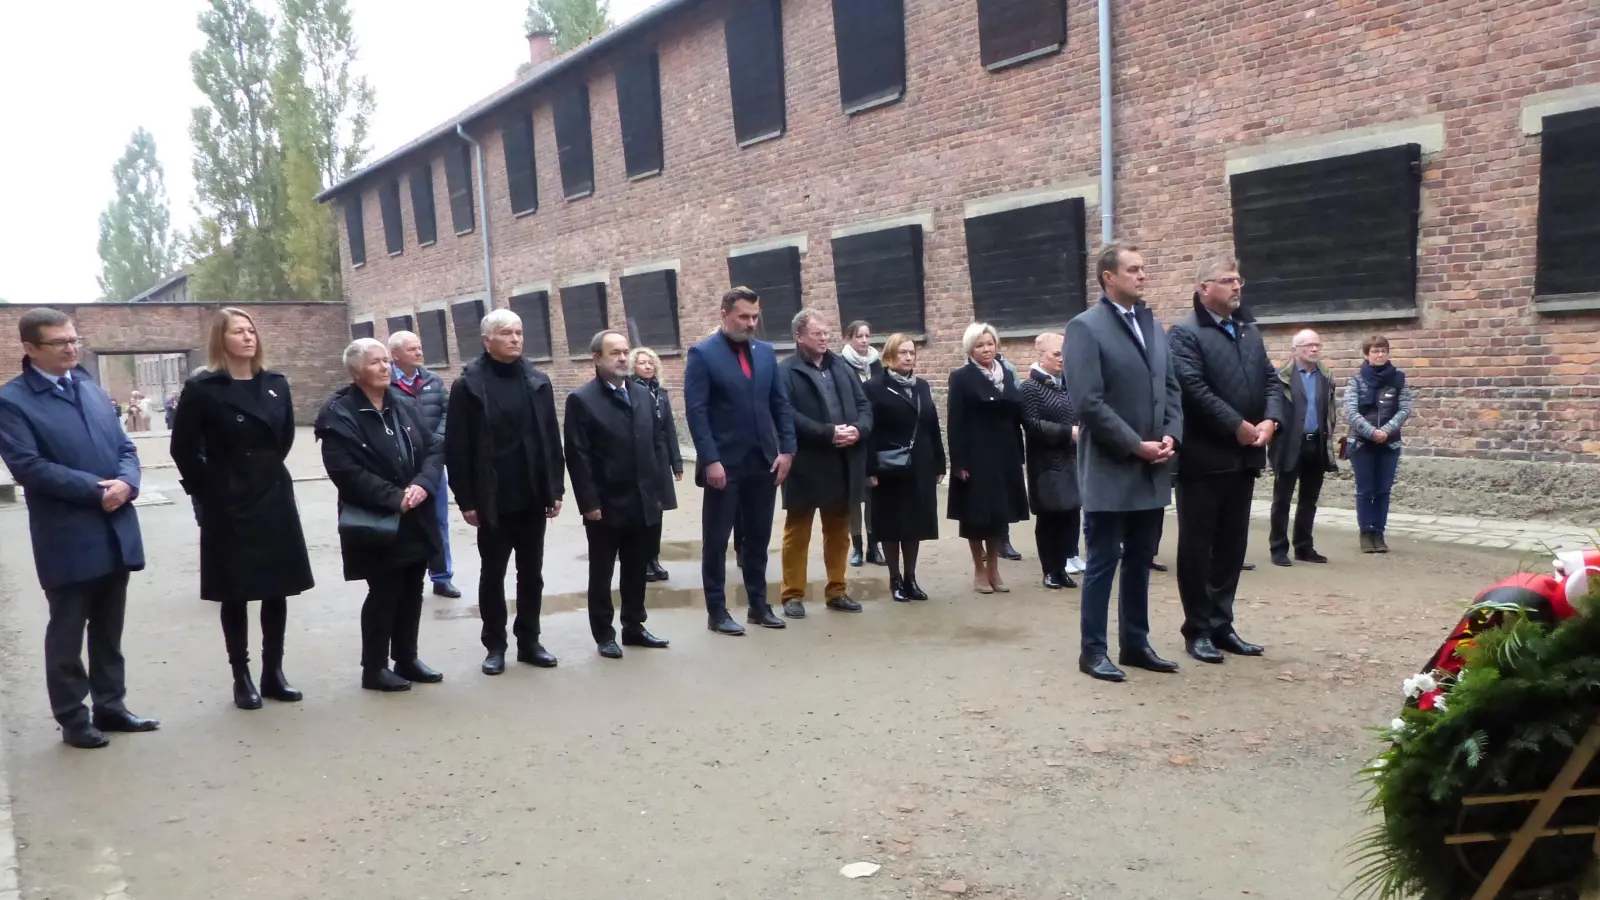 Gemeinsame Kranzniederlegung der Dachauer Delegation mit den Freunden aus dem Partnerlandkreis Oświęcim. (Foto: Melitta Fischer)